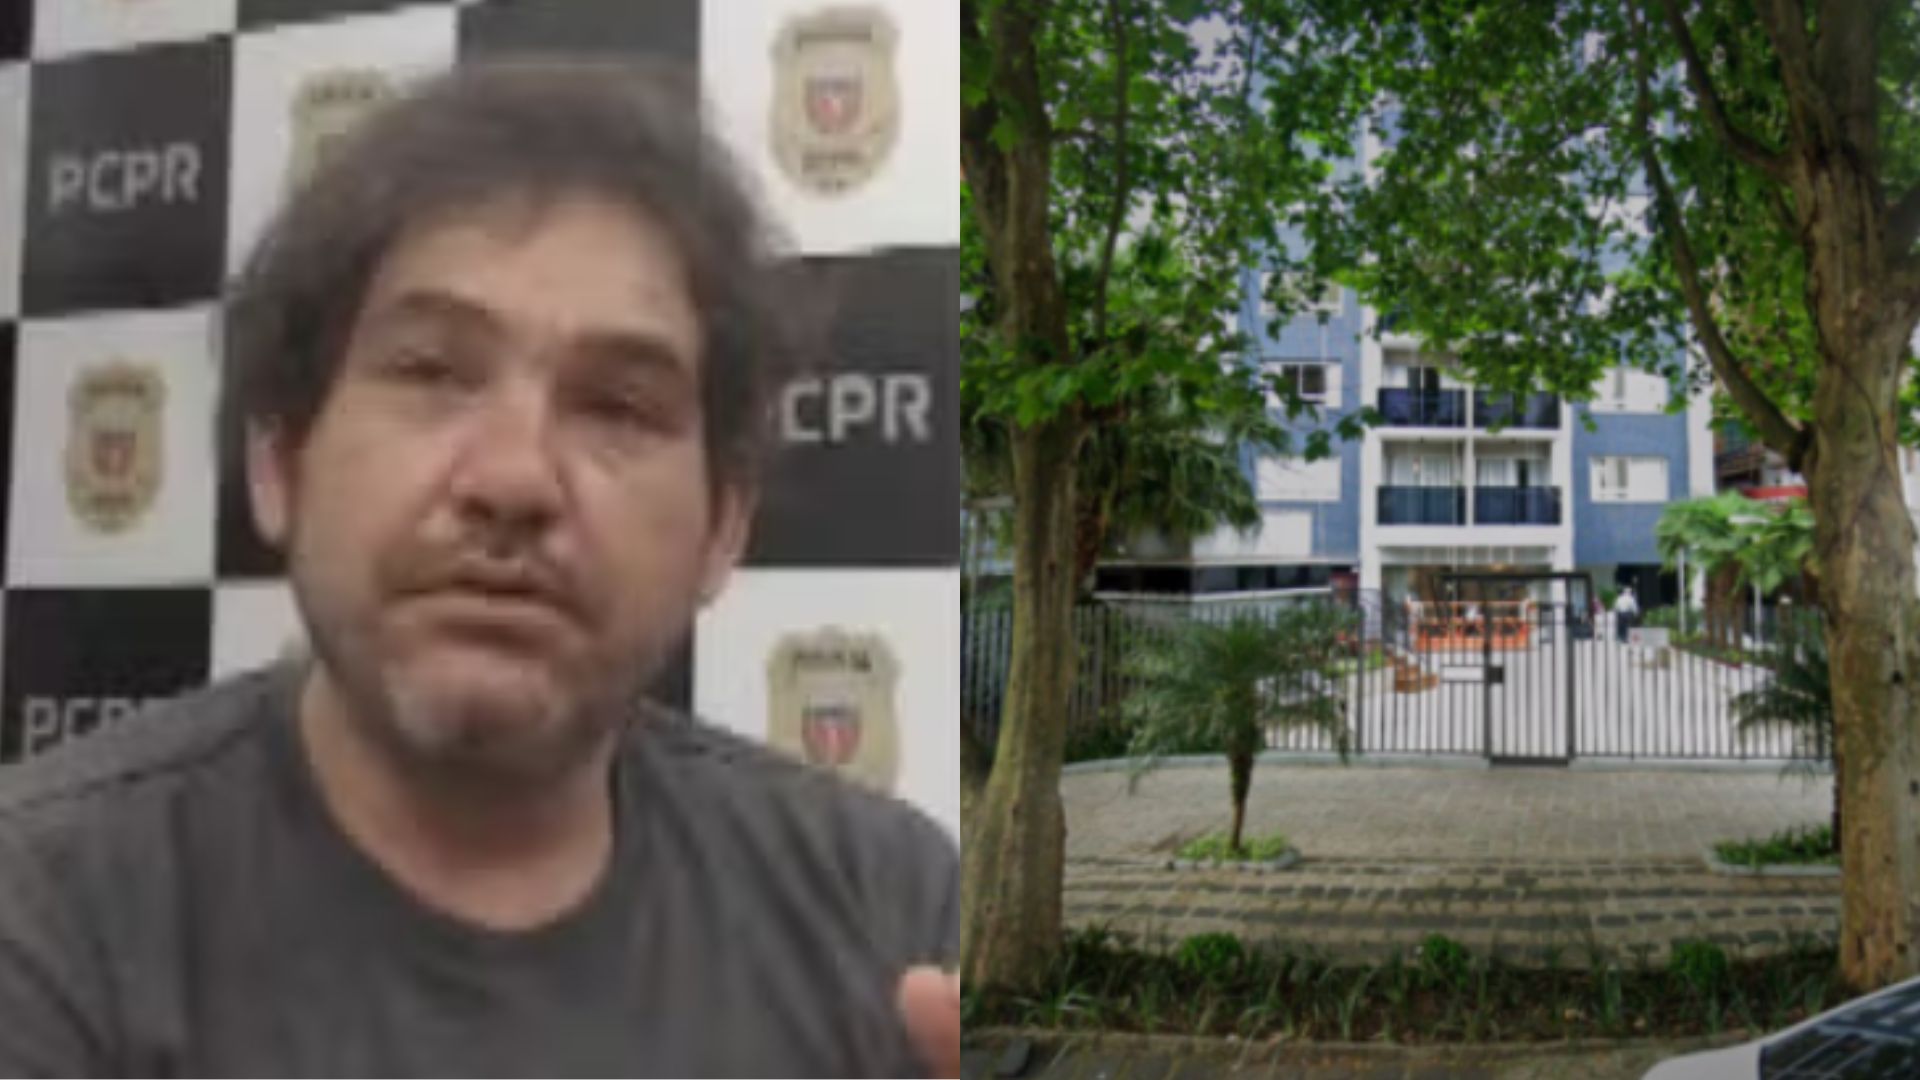 Morre homem acusado de cortar corda de trabalhador que limpava fachada de prédio, em Curitiba